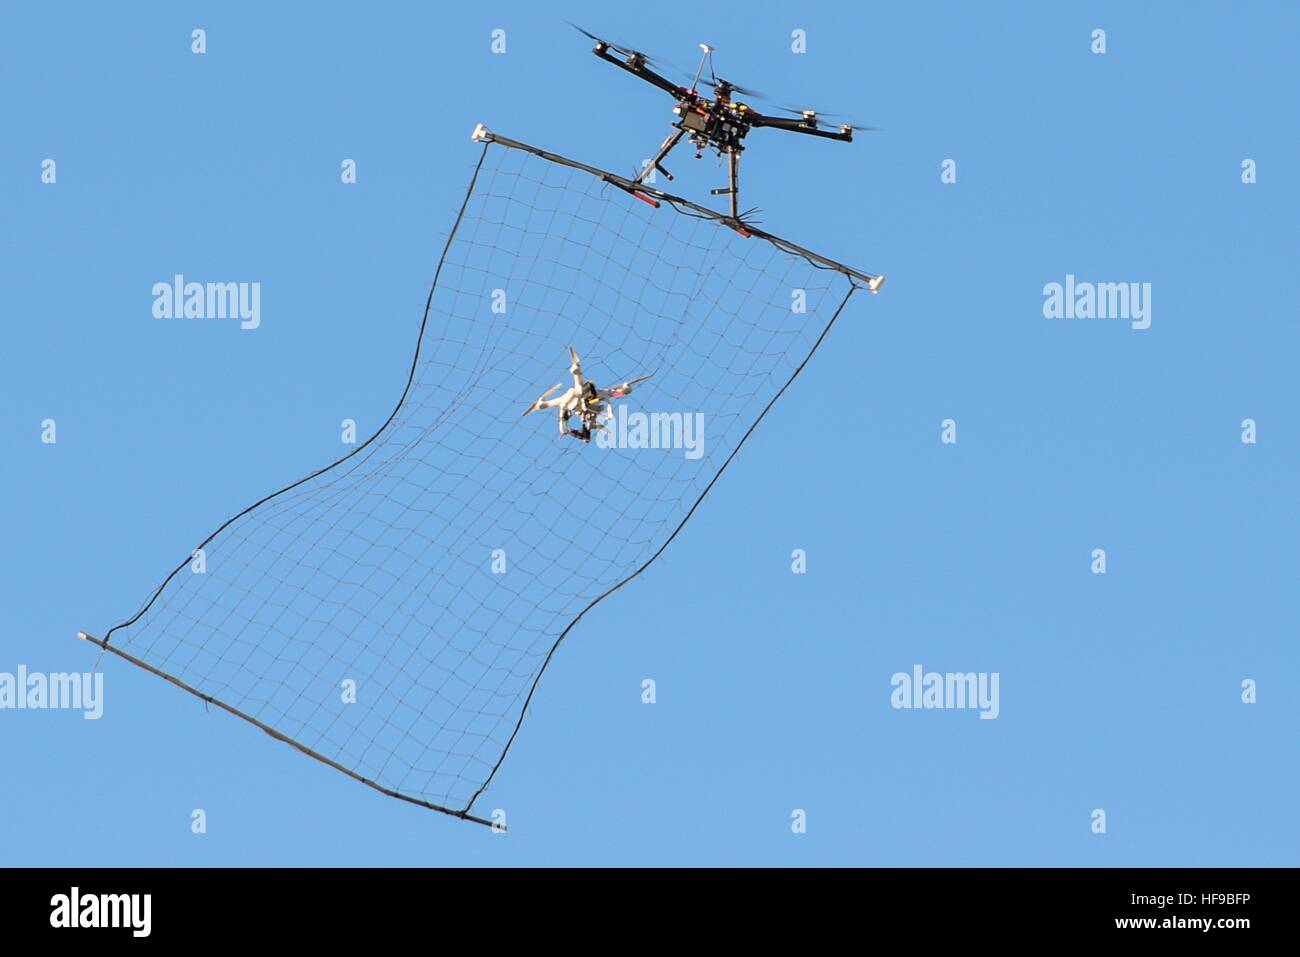 Un sistema aéreo no tripulado de cazadores-asesinos drone capta un maniquí 3 drone en su red a mitad de vuelo durante el Laboratorio de Investigación de la Fuerza Aérea de los comandantes en el Reto Nevada Sitio de Seguridad Nacional el 13 de diciembre de 2016 en Las Vegas, Nevada. Foto de stock